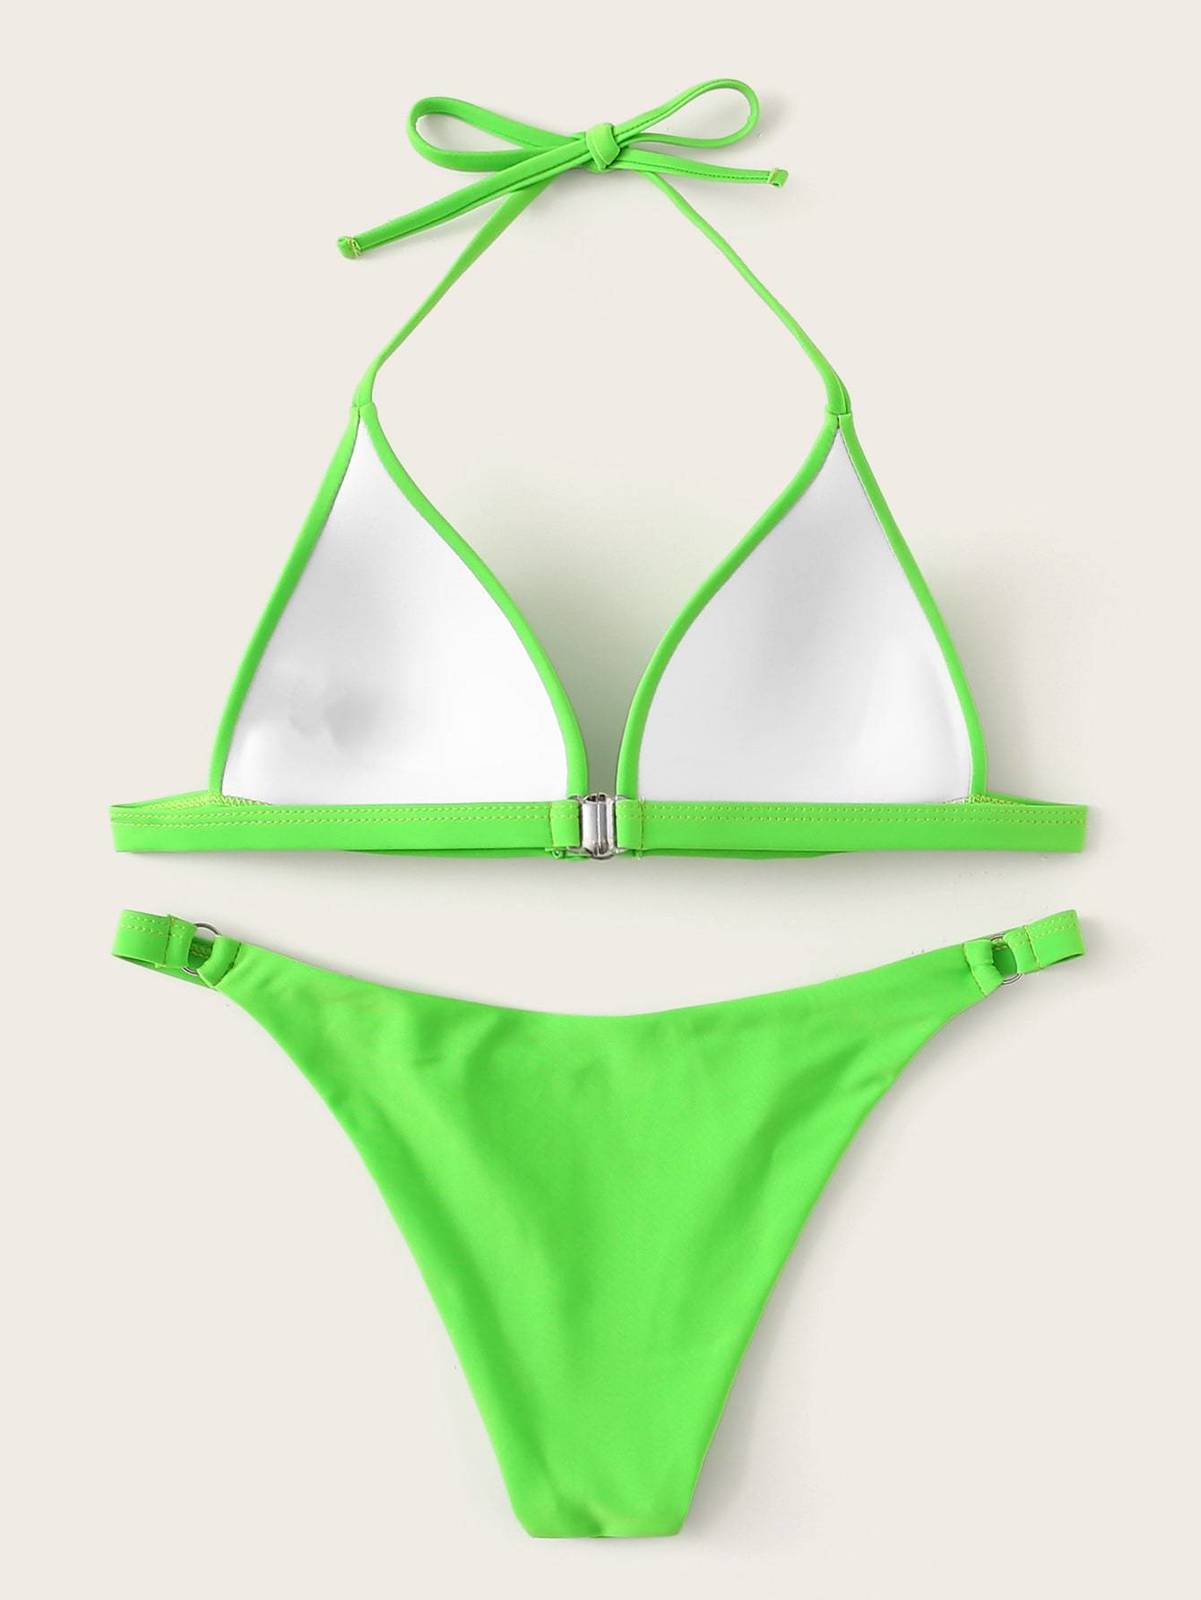 Neon Green Seam Triangle Top With Ring Loop Bikini - Tops